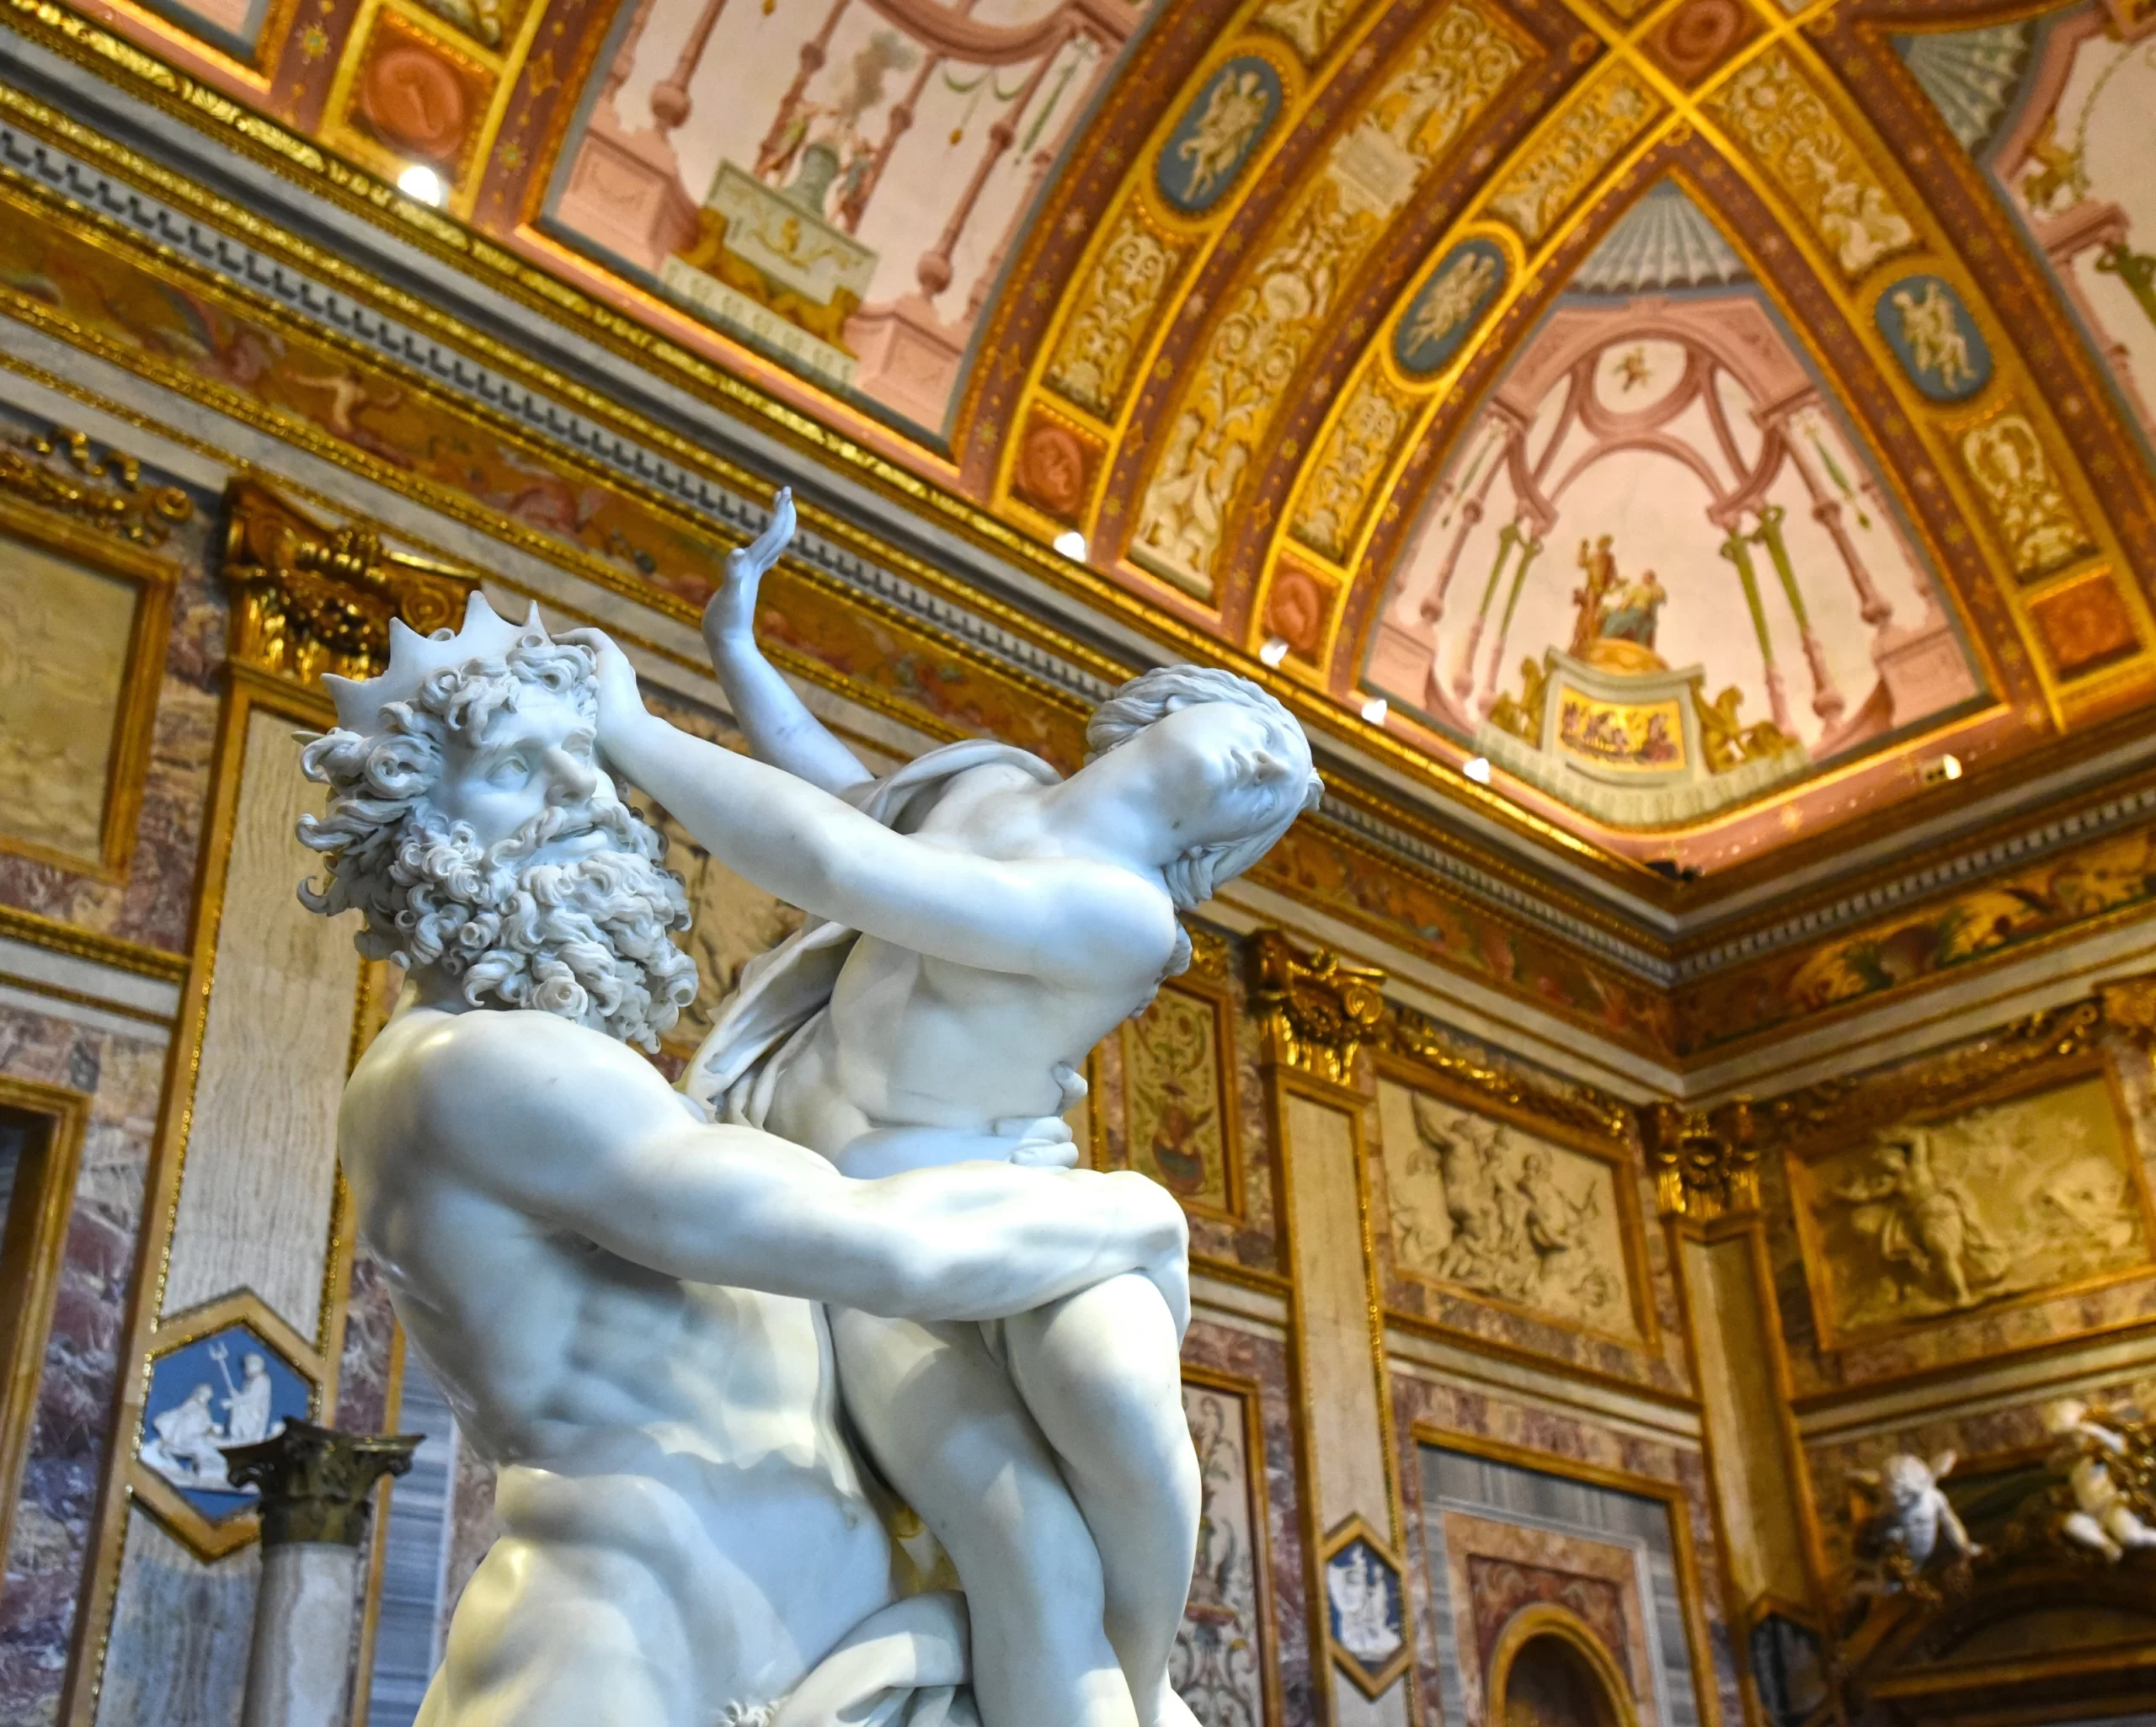 Галерея Боргезе в Риме: билеты, история и практическая информация